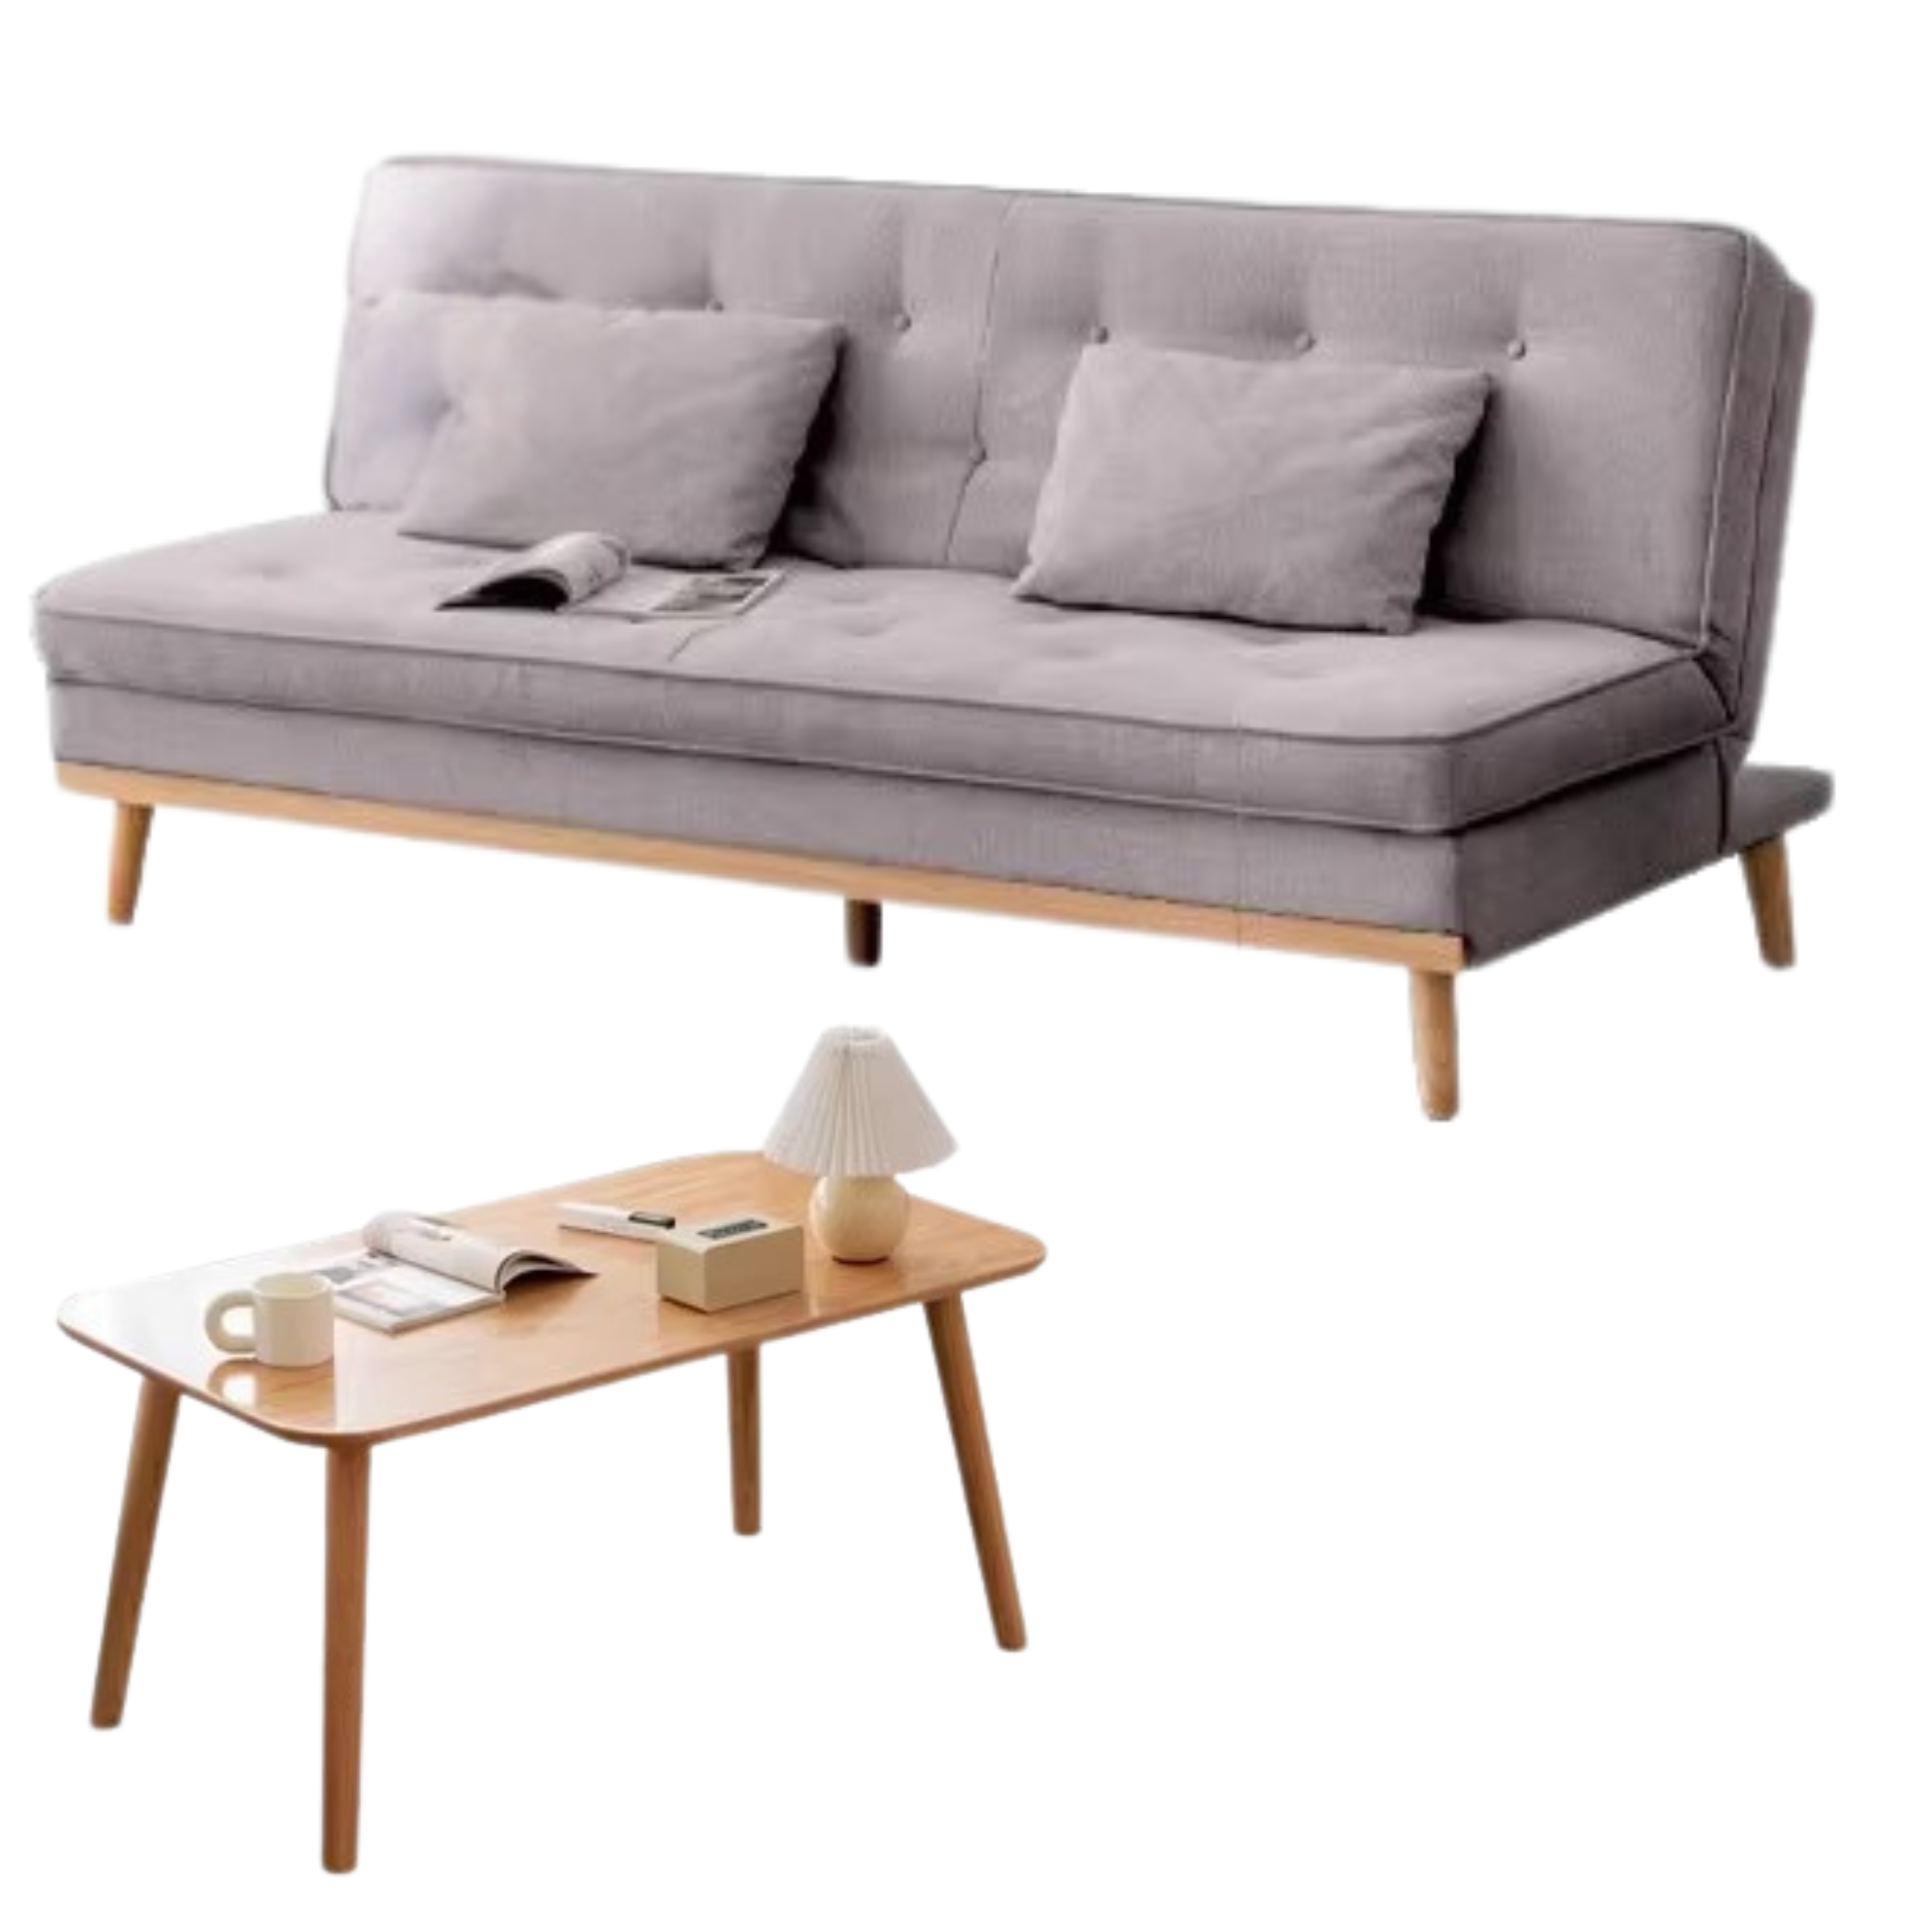 Beech solid wood folding Sleeper Fabric sofa)